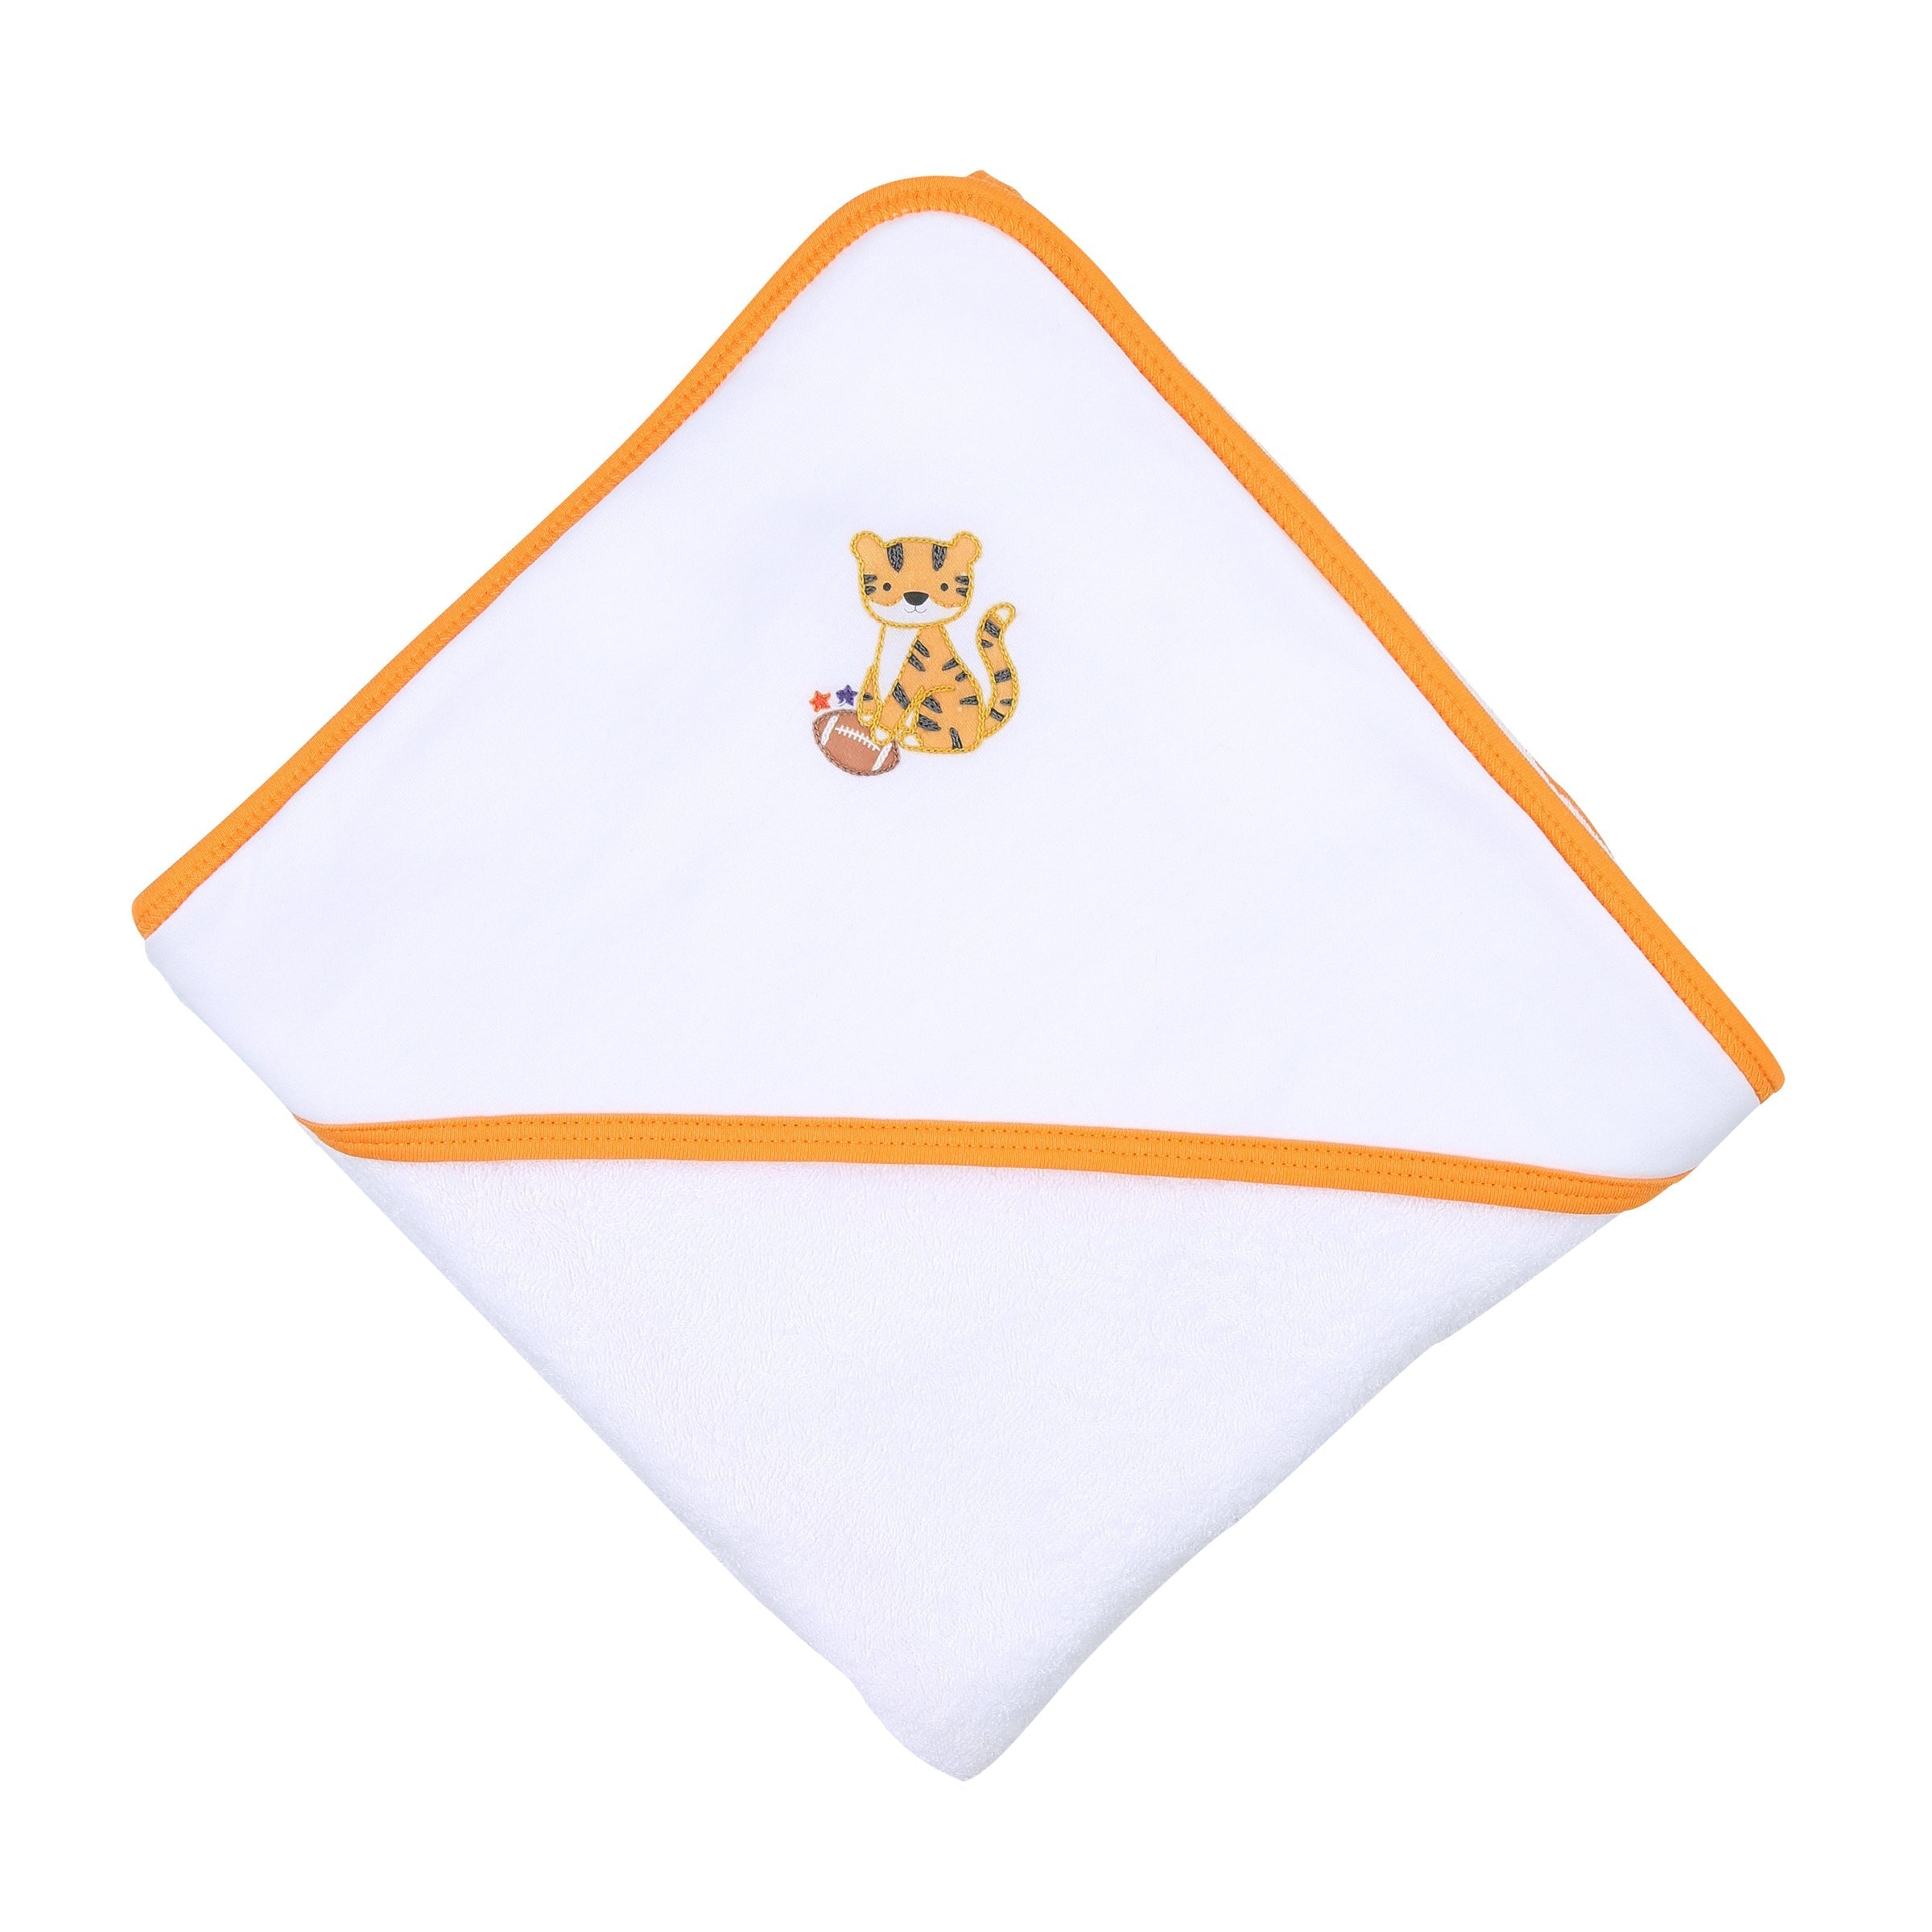 Tiger Football Hooded Towel - Orange/Purple